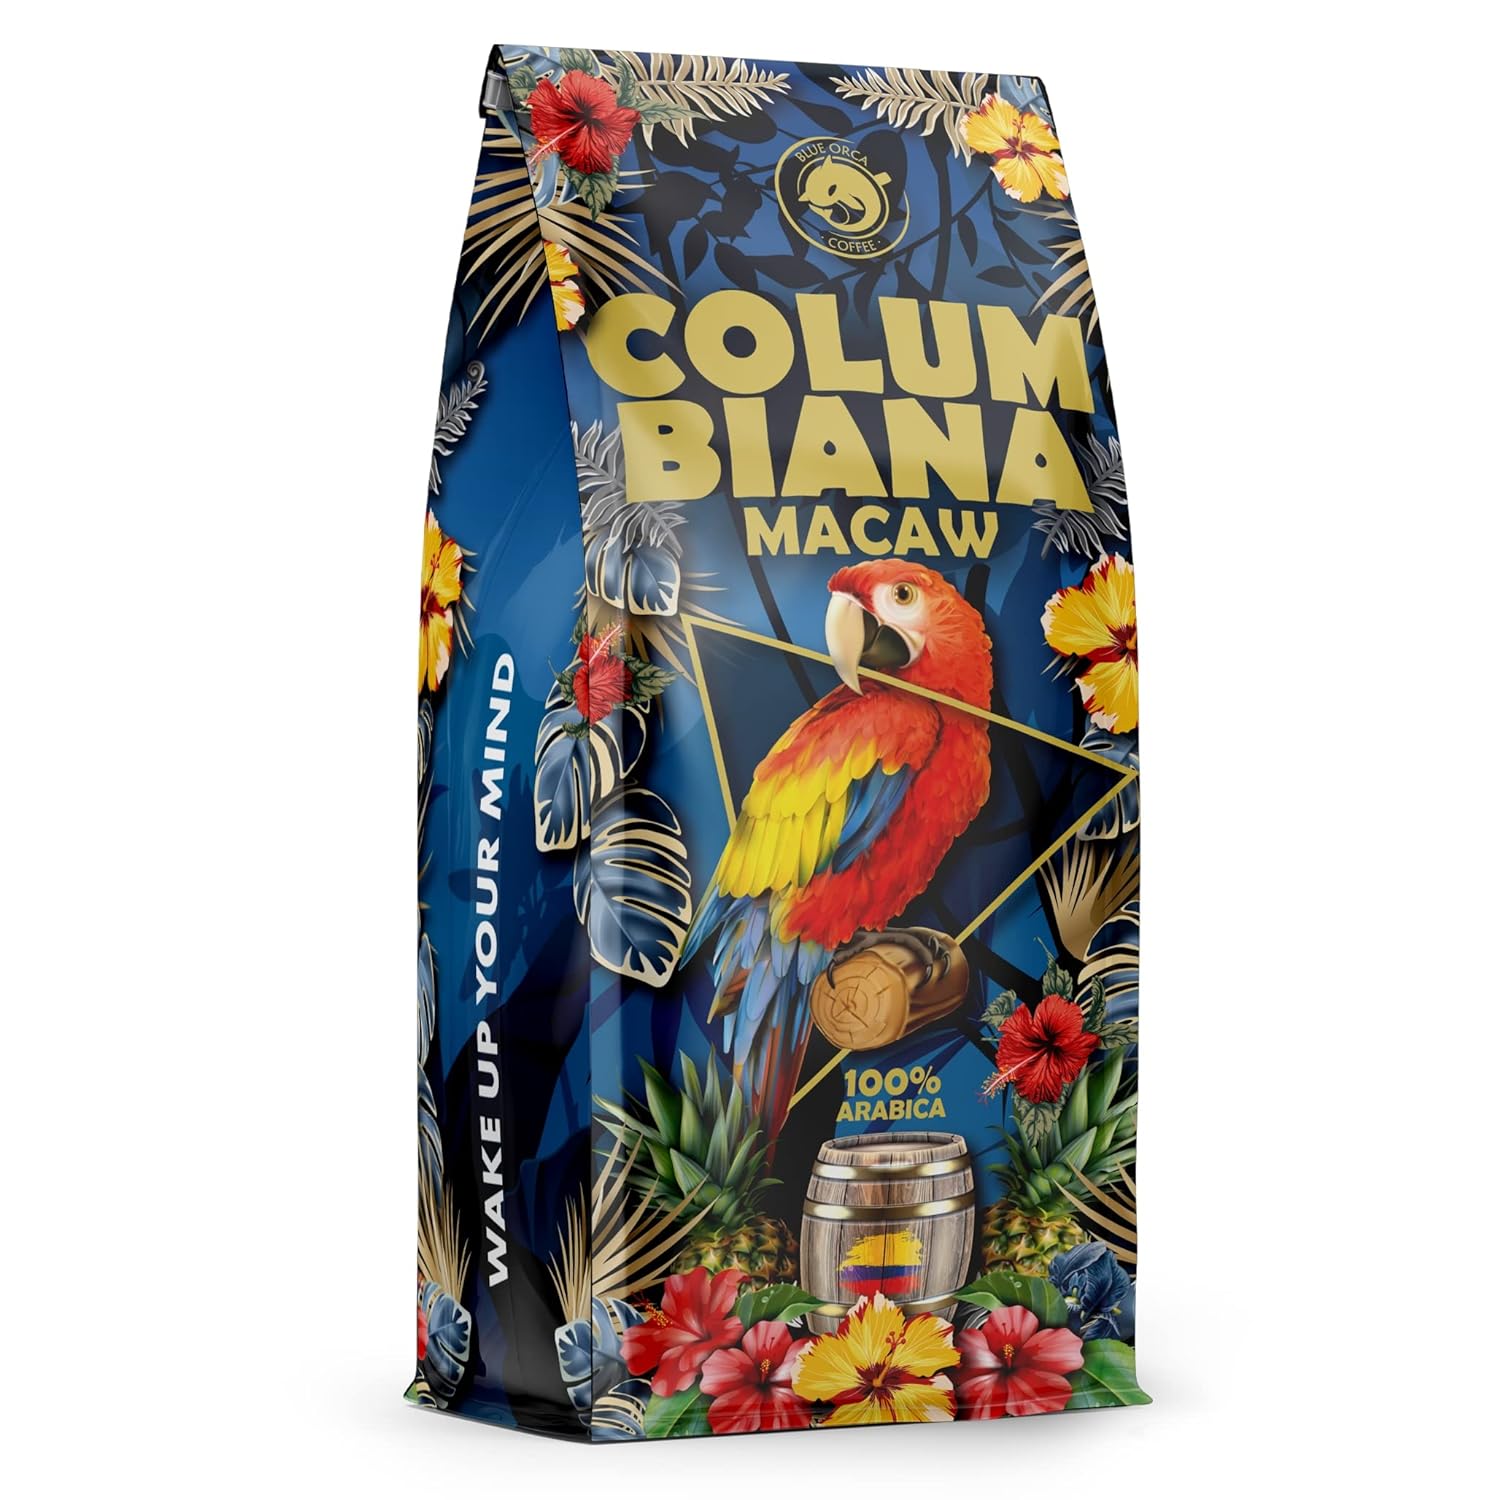 Blue Orca Coffee - COLUMBIANA MACAW - Ganze Kaffeebohnen aus Kolumbien - Frisch geröstet - Multi Origin - 100% Arabica, 1 kg
